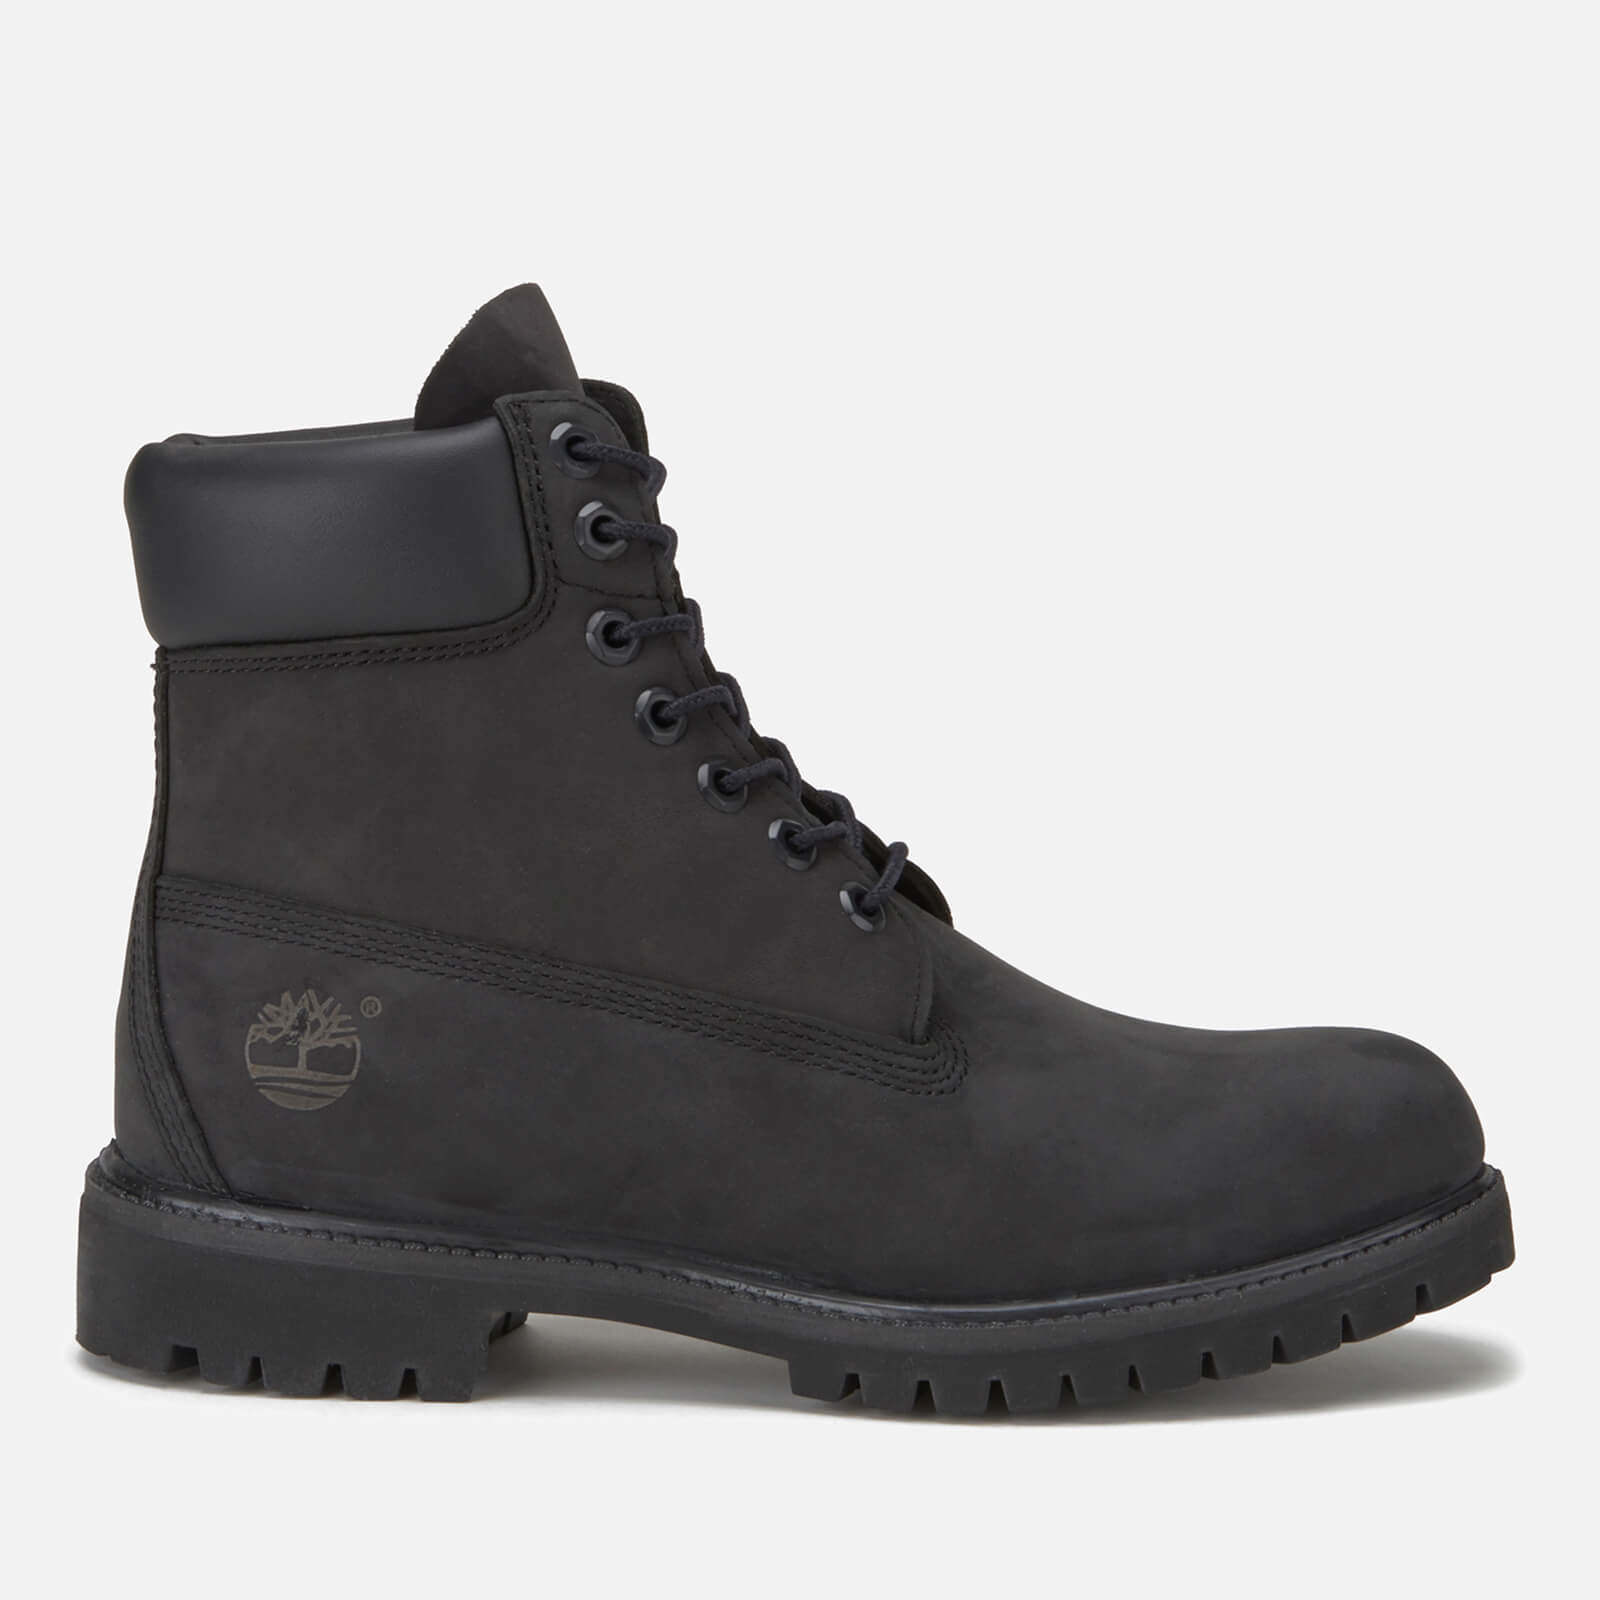 Timberland Men’s 6 Inch Premium Waterproof Boots - Black